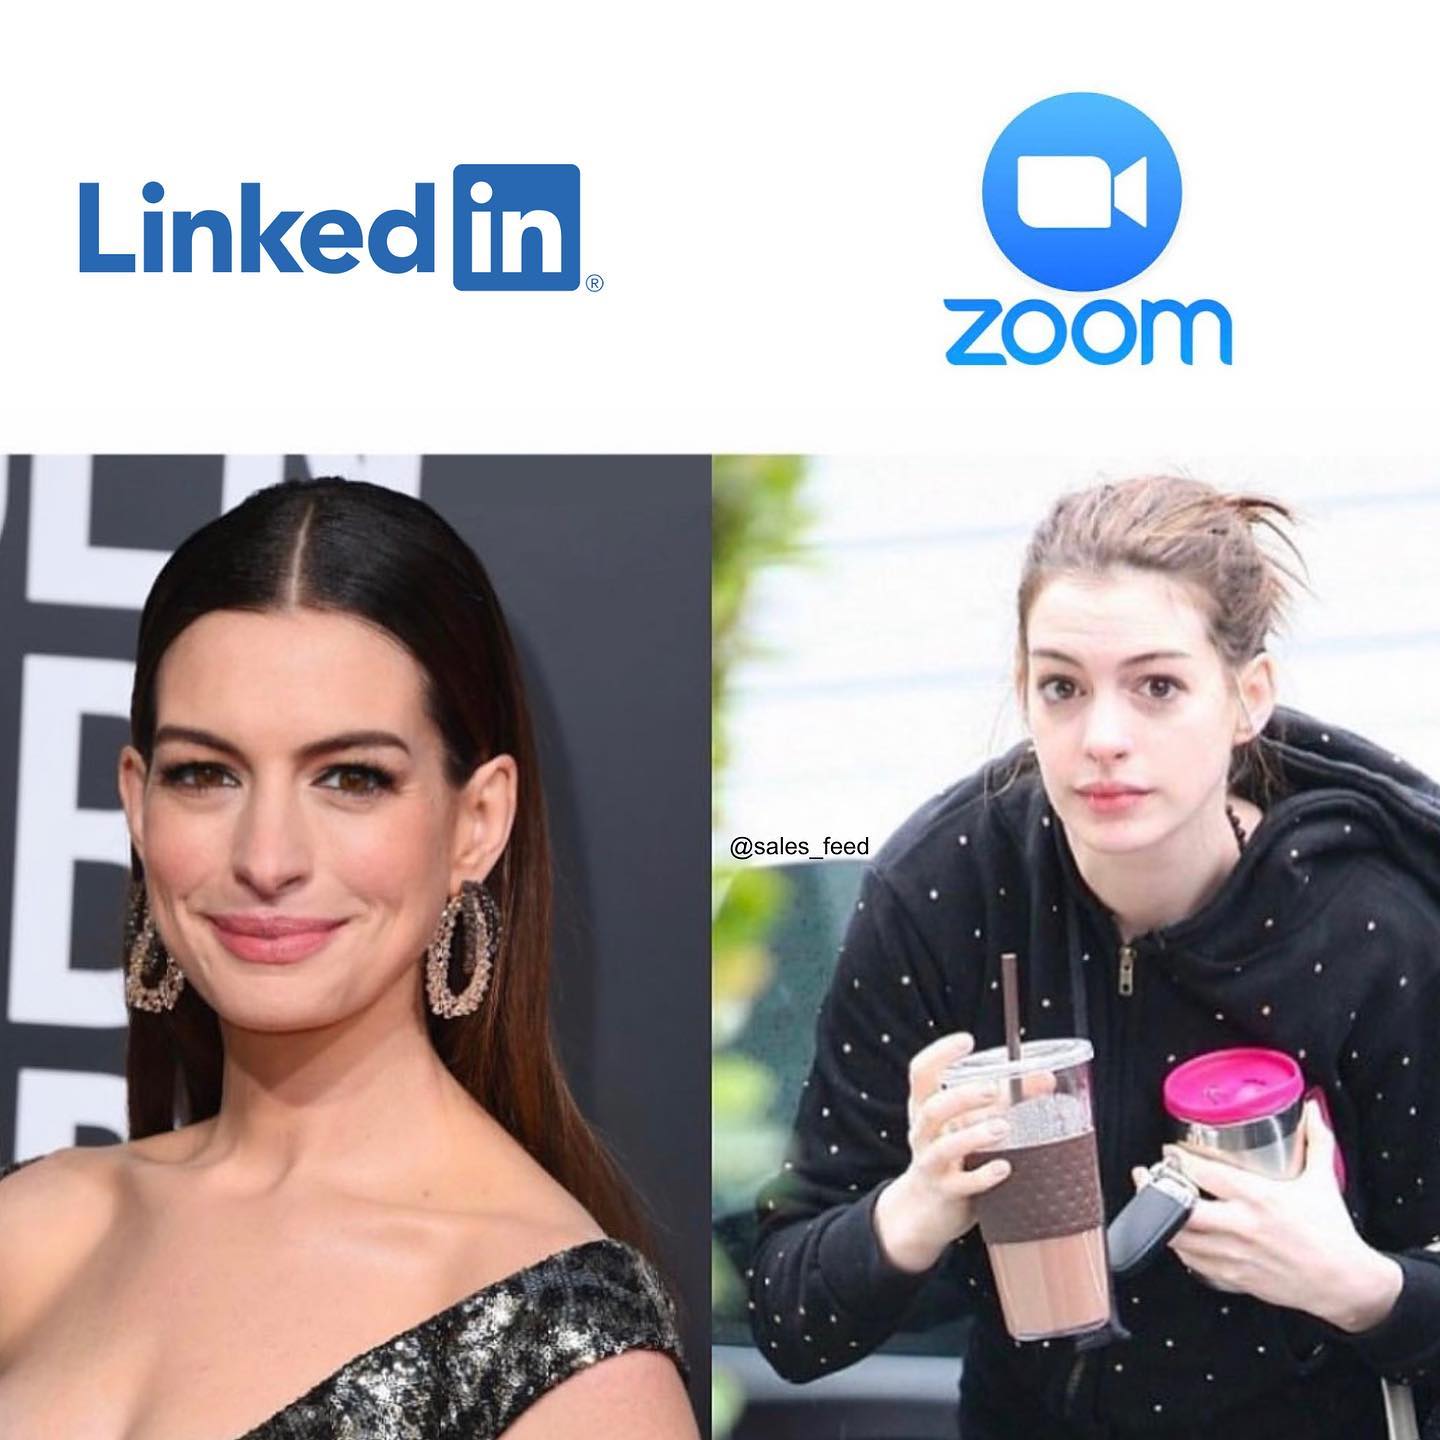 Me on LinkedIn vs me on Zoom